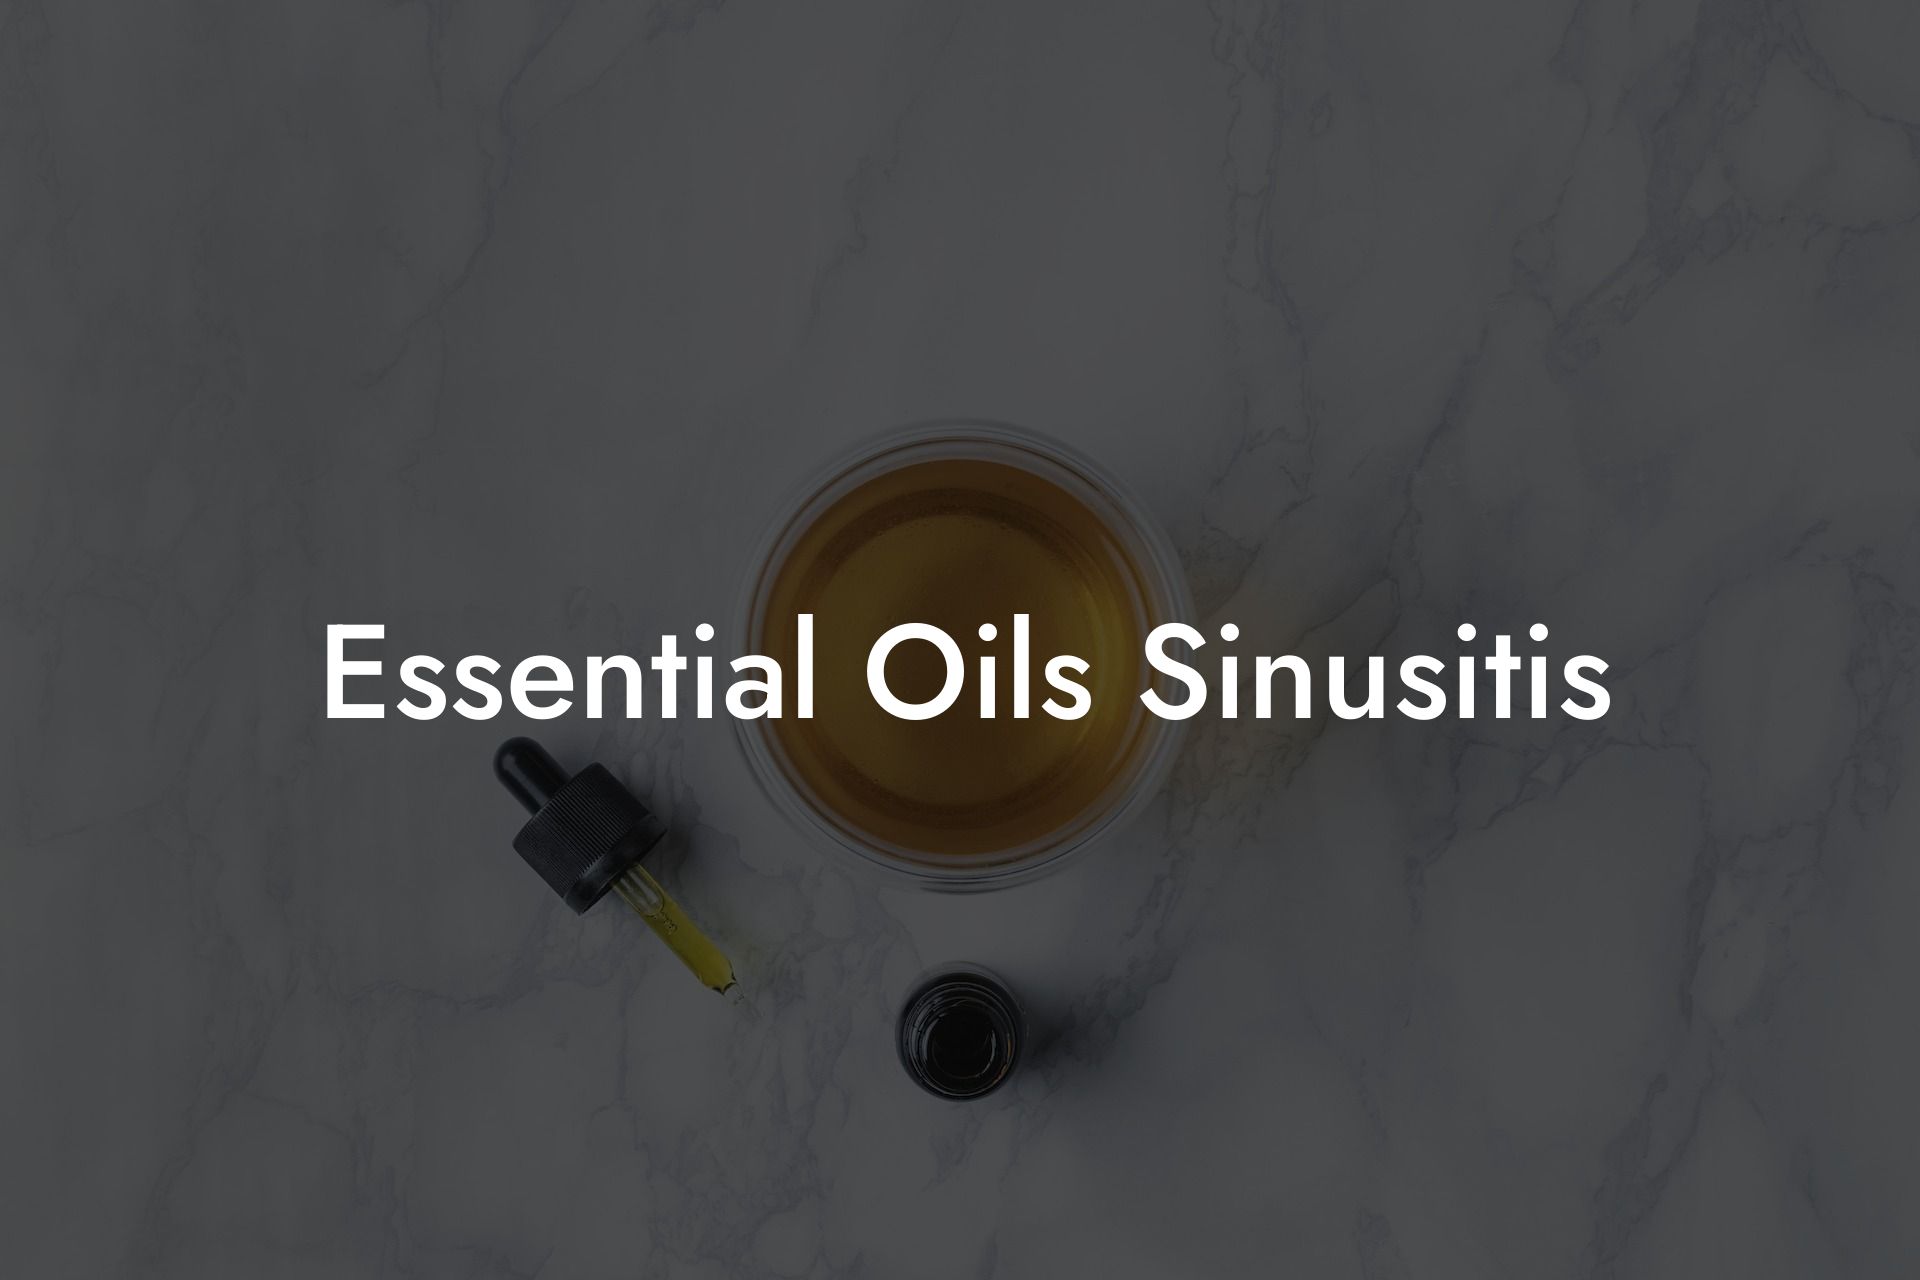 Essential Oils Sinusitis